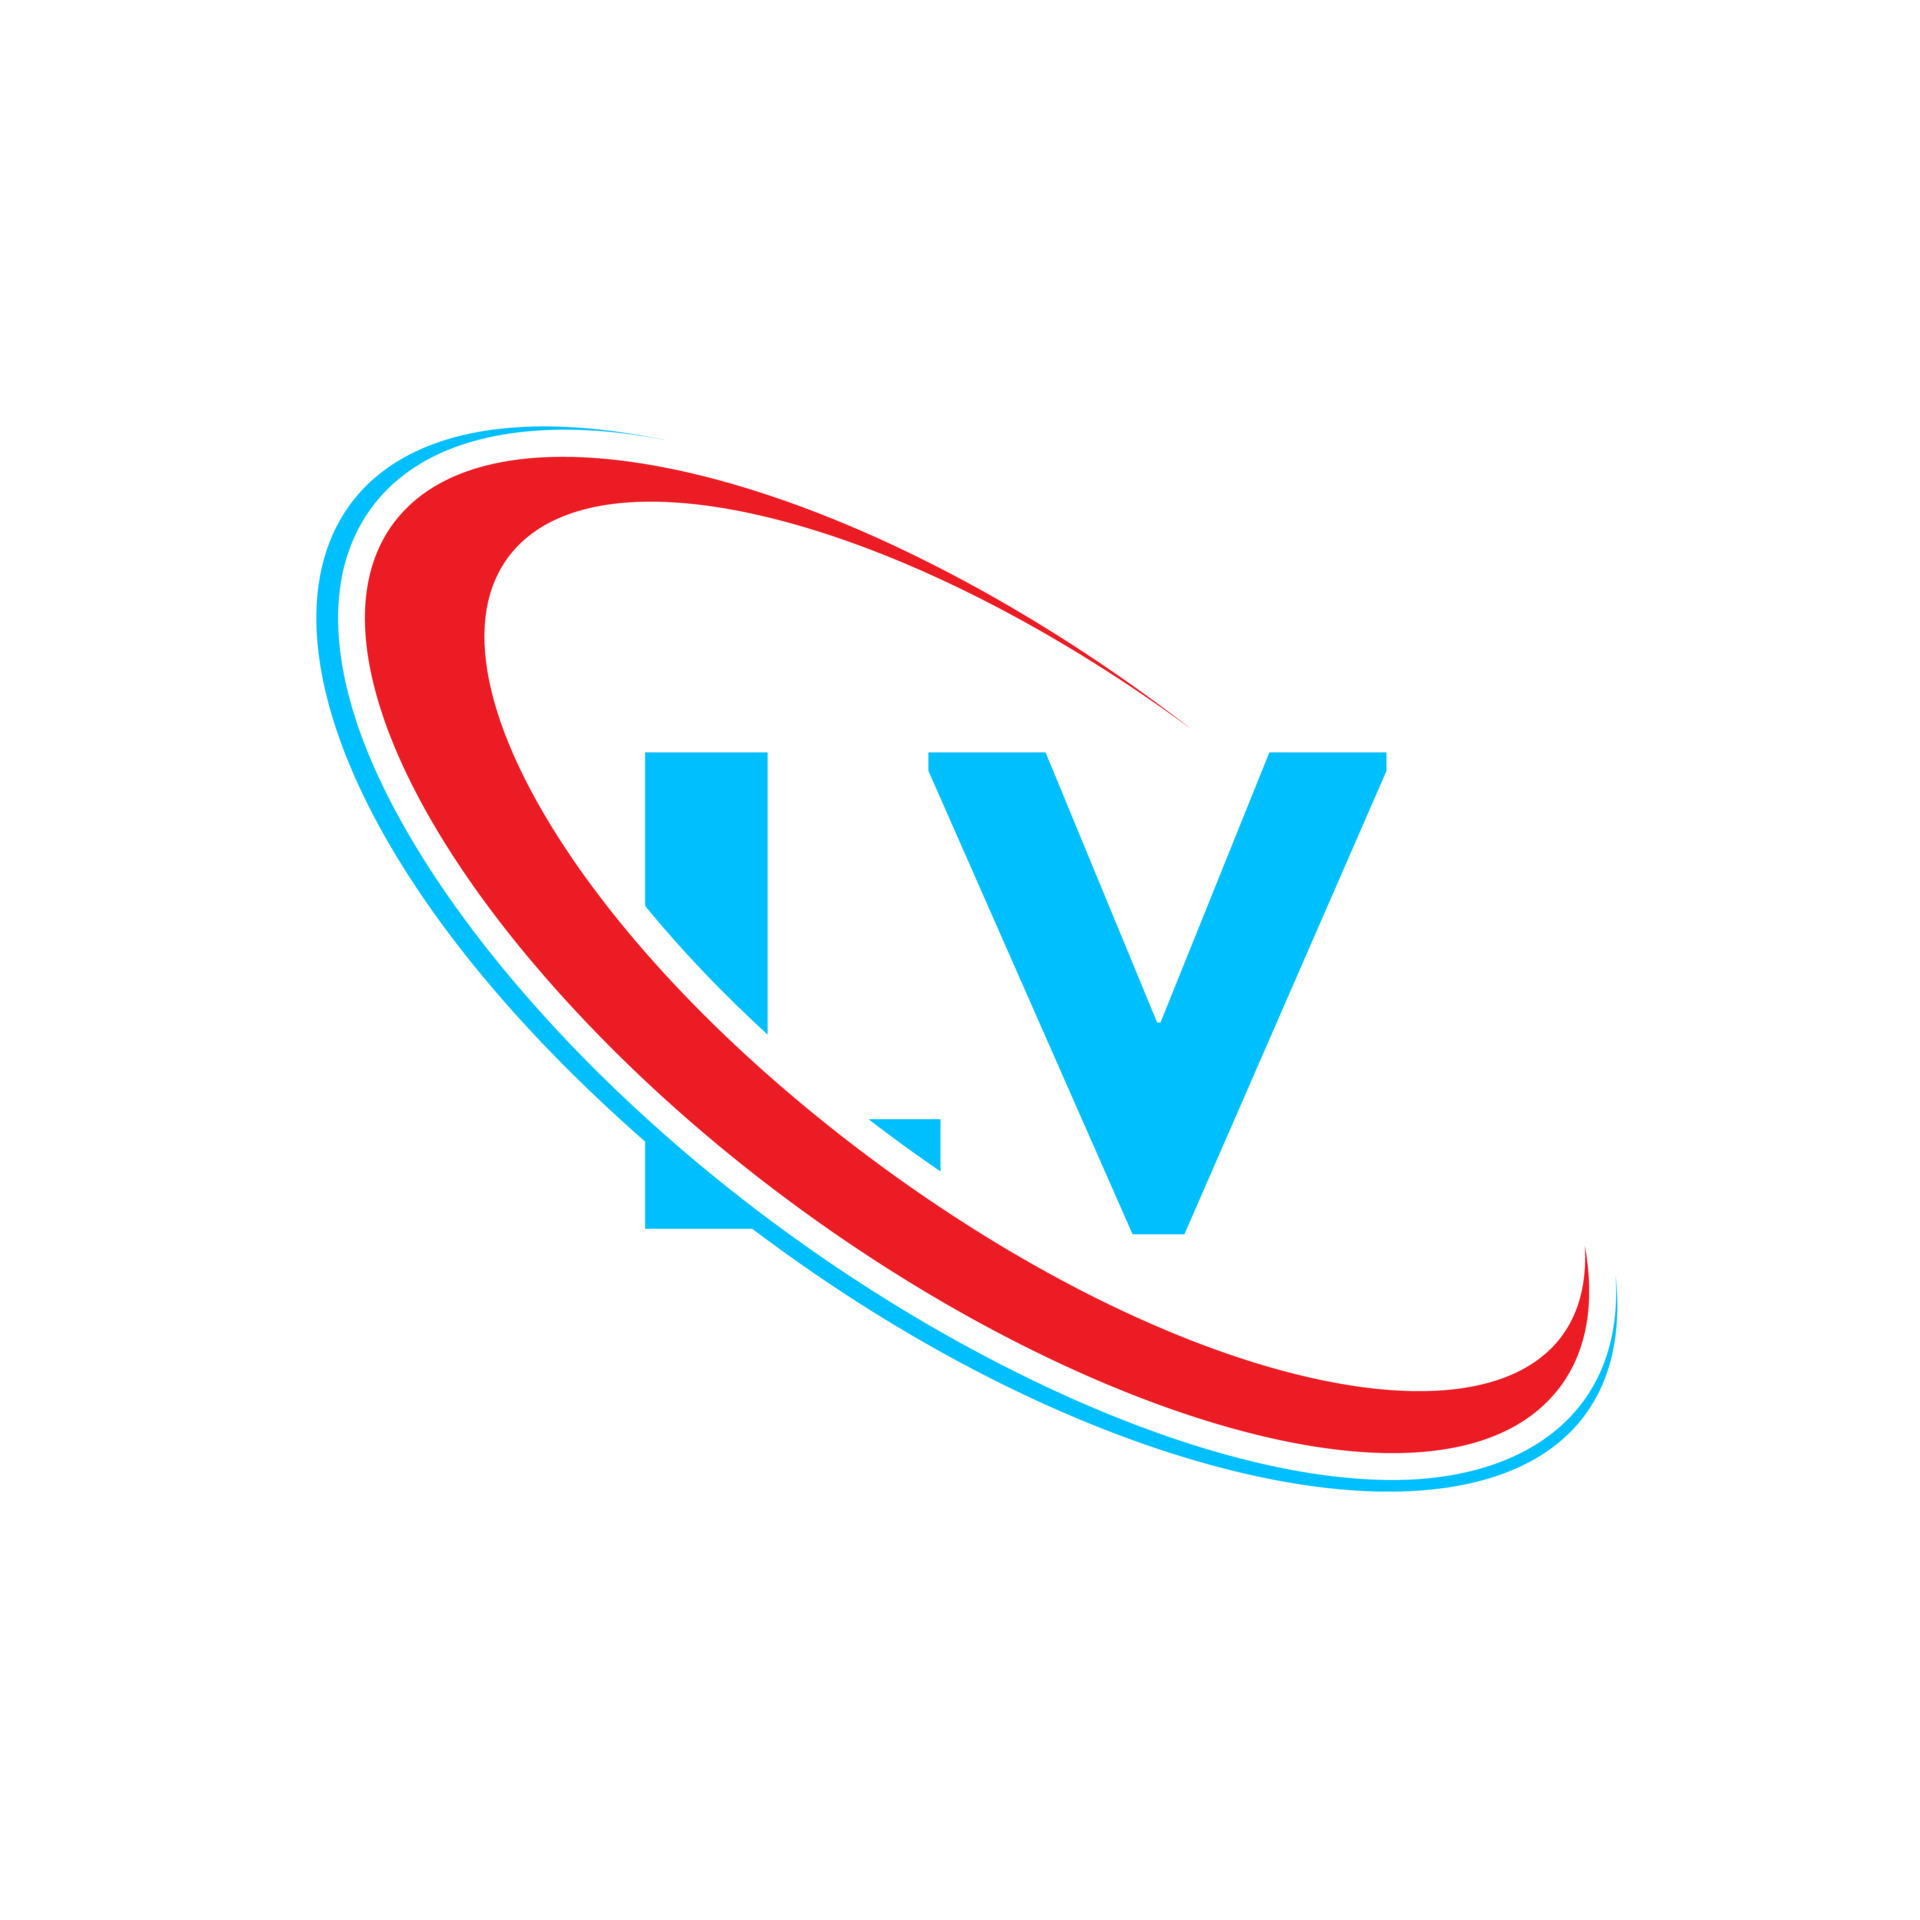 LV logo. LV design. Blue and red LV letter. LV letter logo design